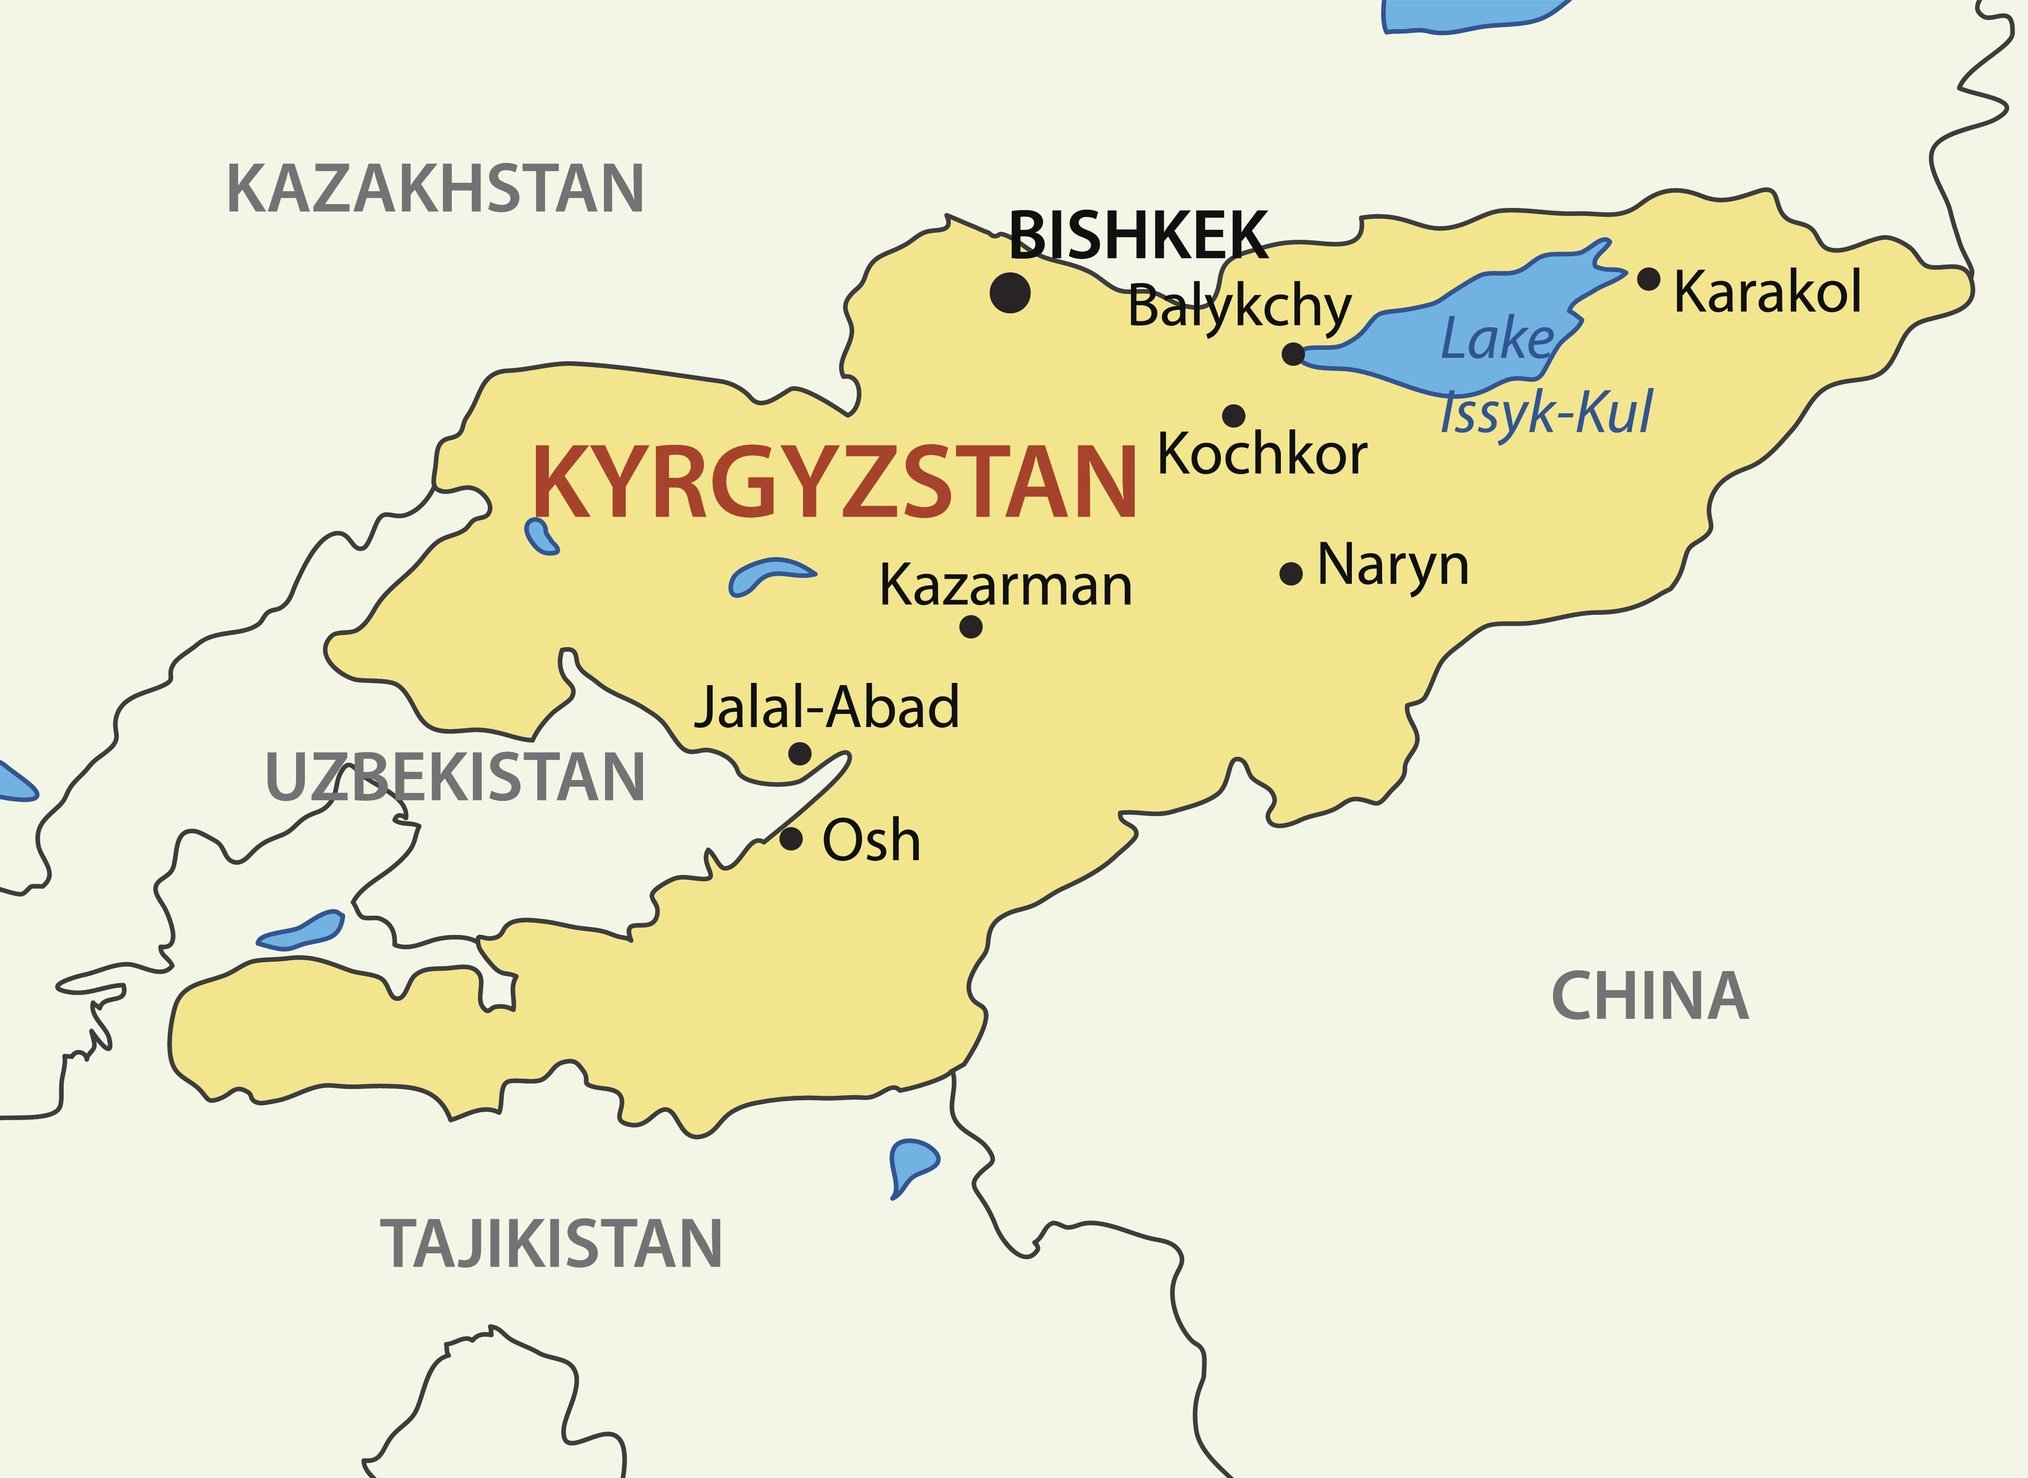 Kyrgyz Republic - Kyrgyzstan - vector map 